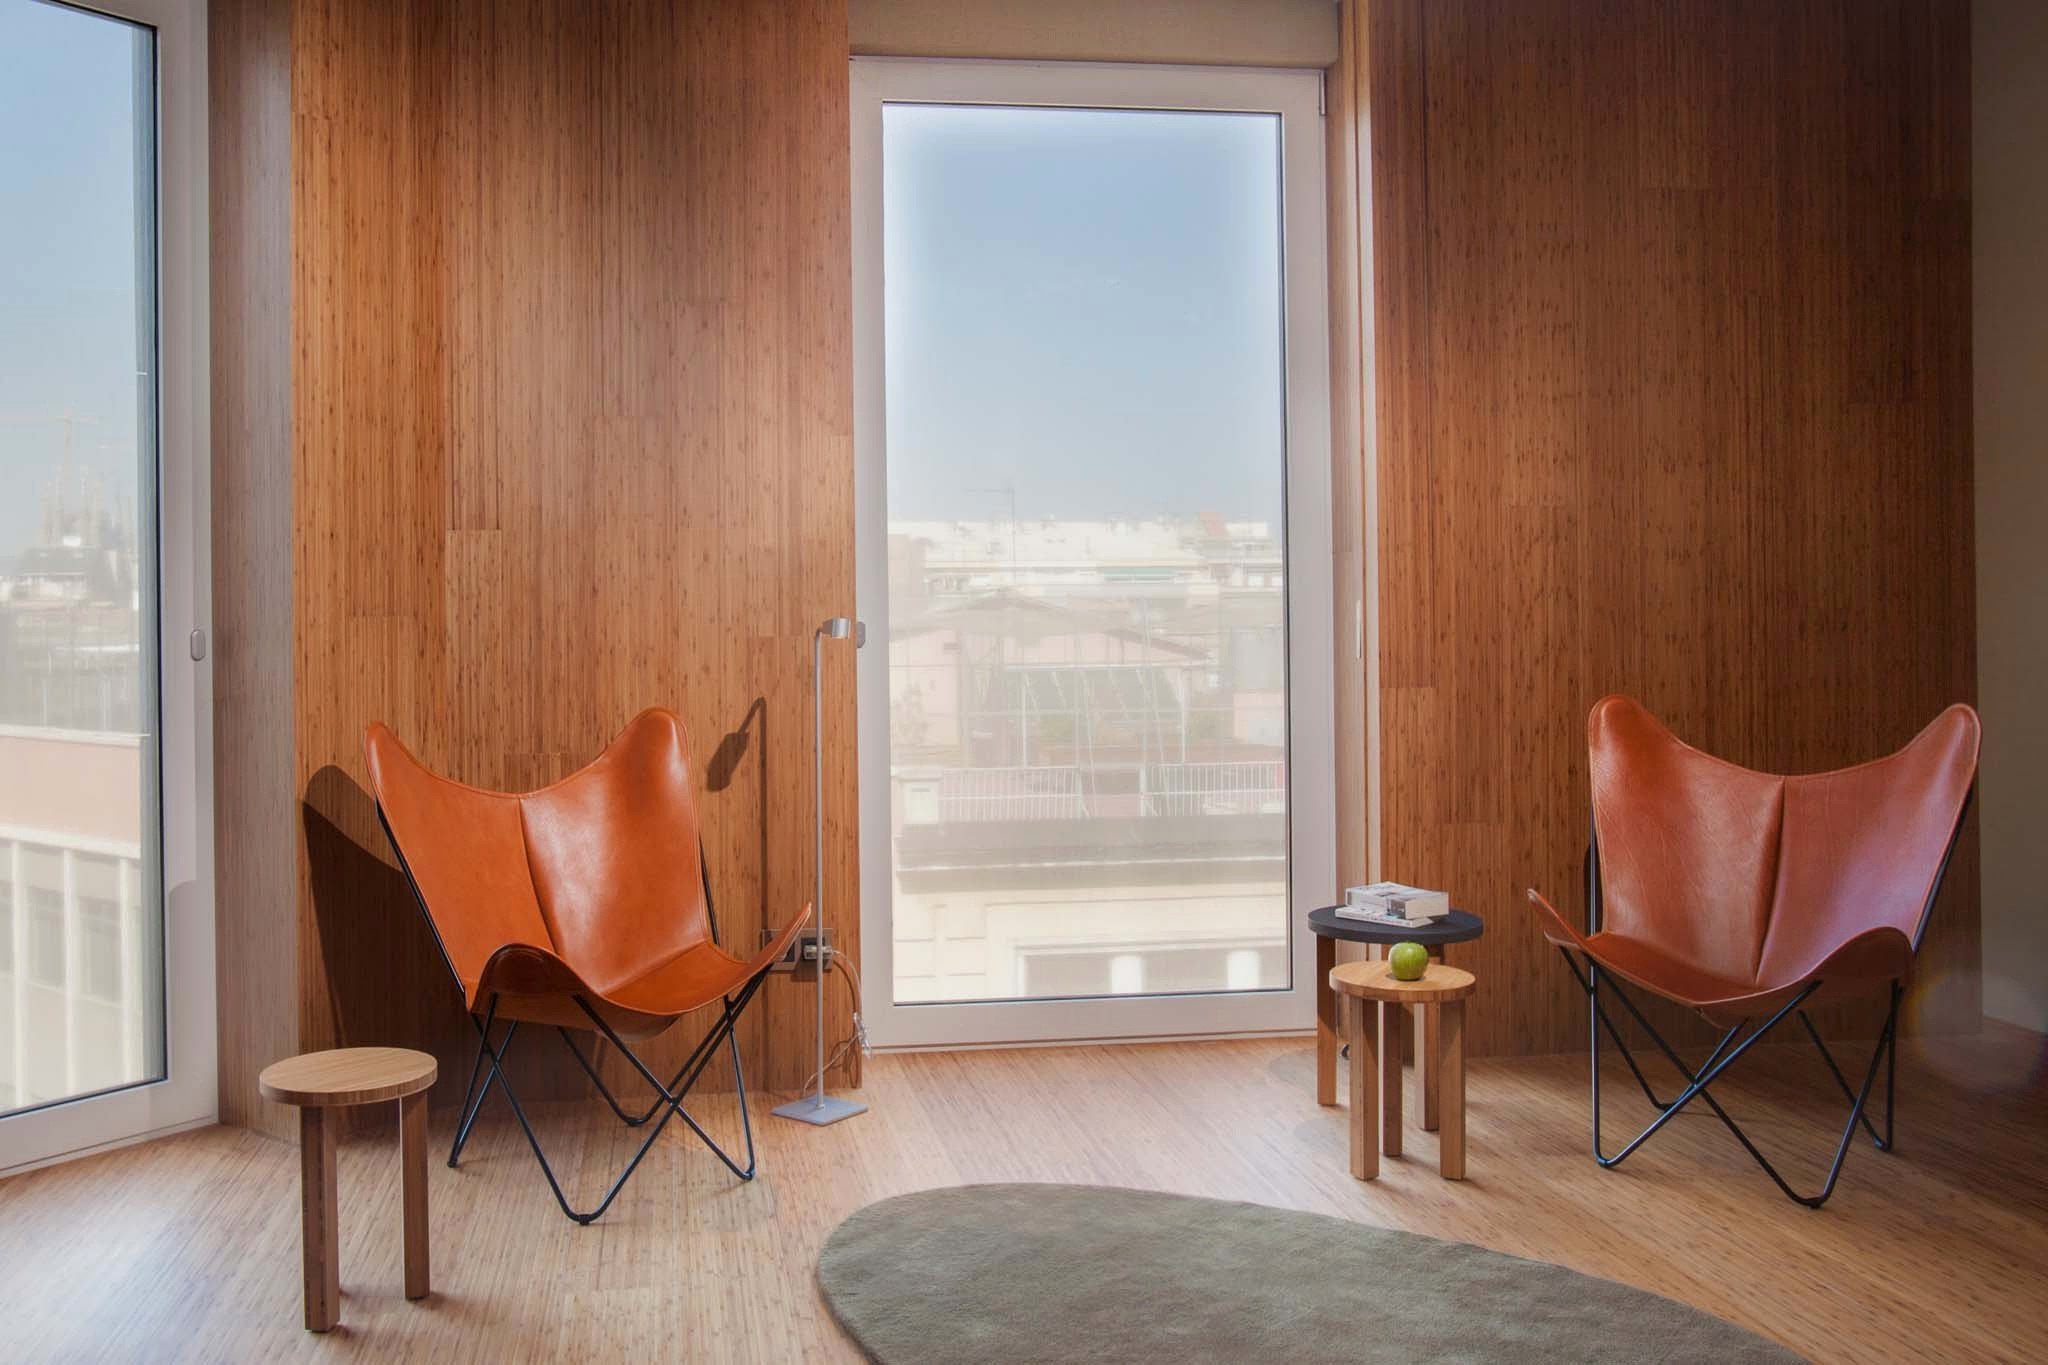 Decorative Chairs for Bedroom Inspirational 21 Elegant Hardwood Floor Bedroom